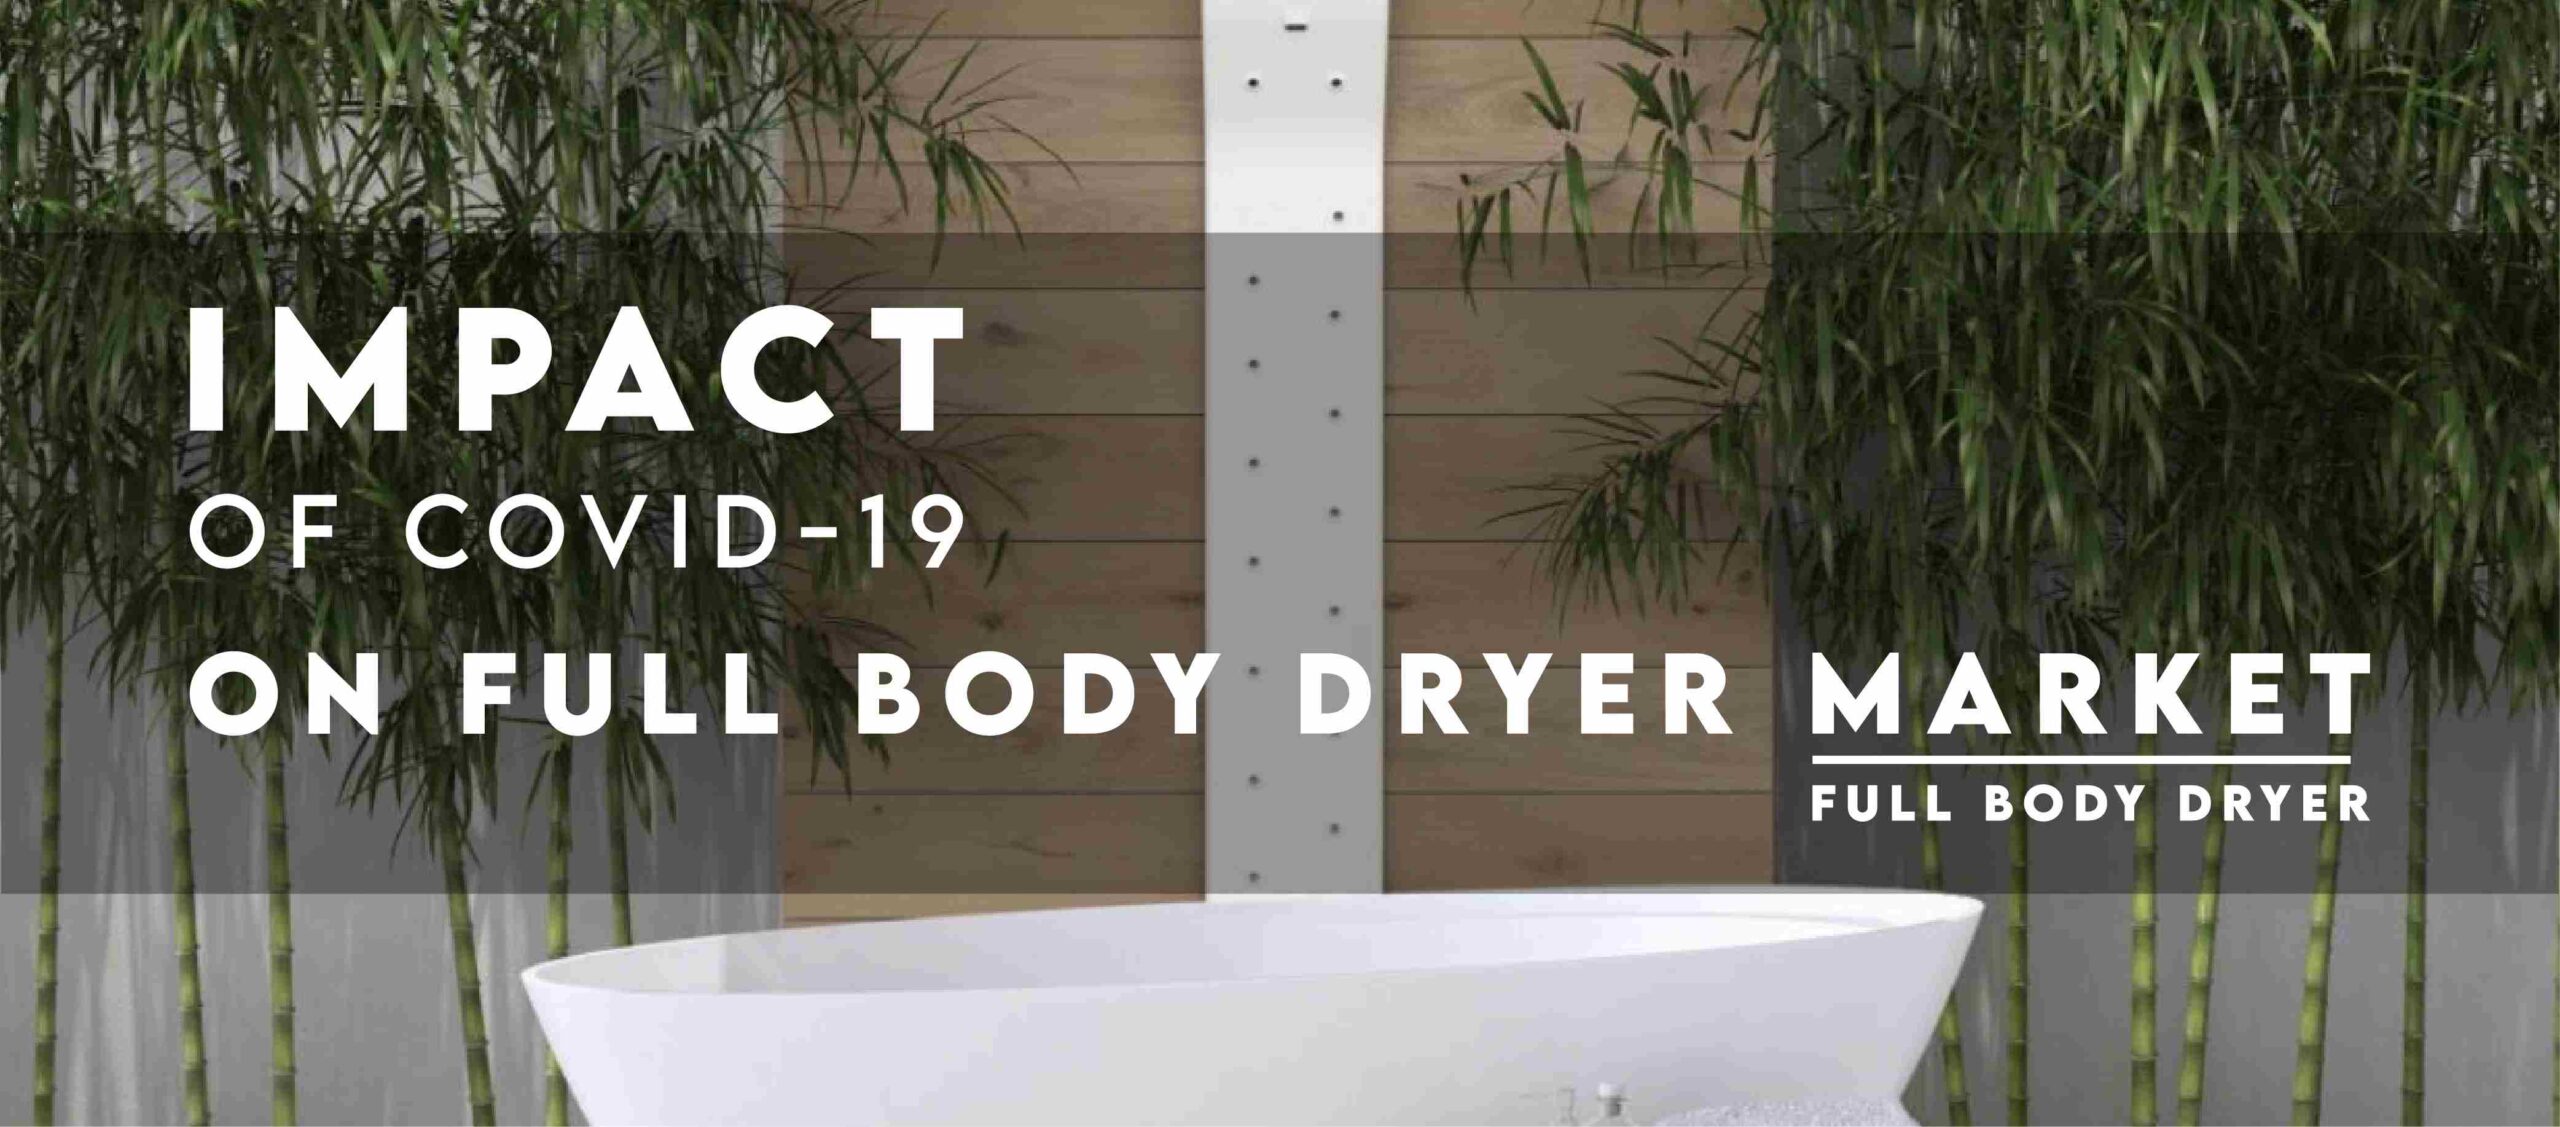 5 Best Body Dryer in the US - Full Body Dryer - Business Module Hub